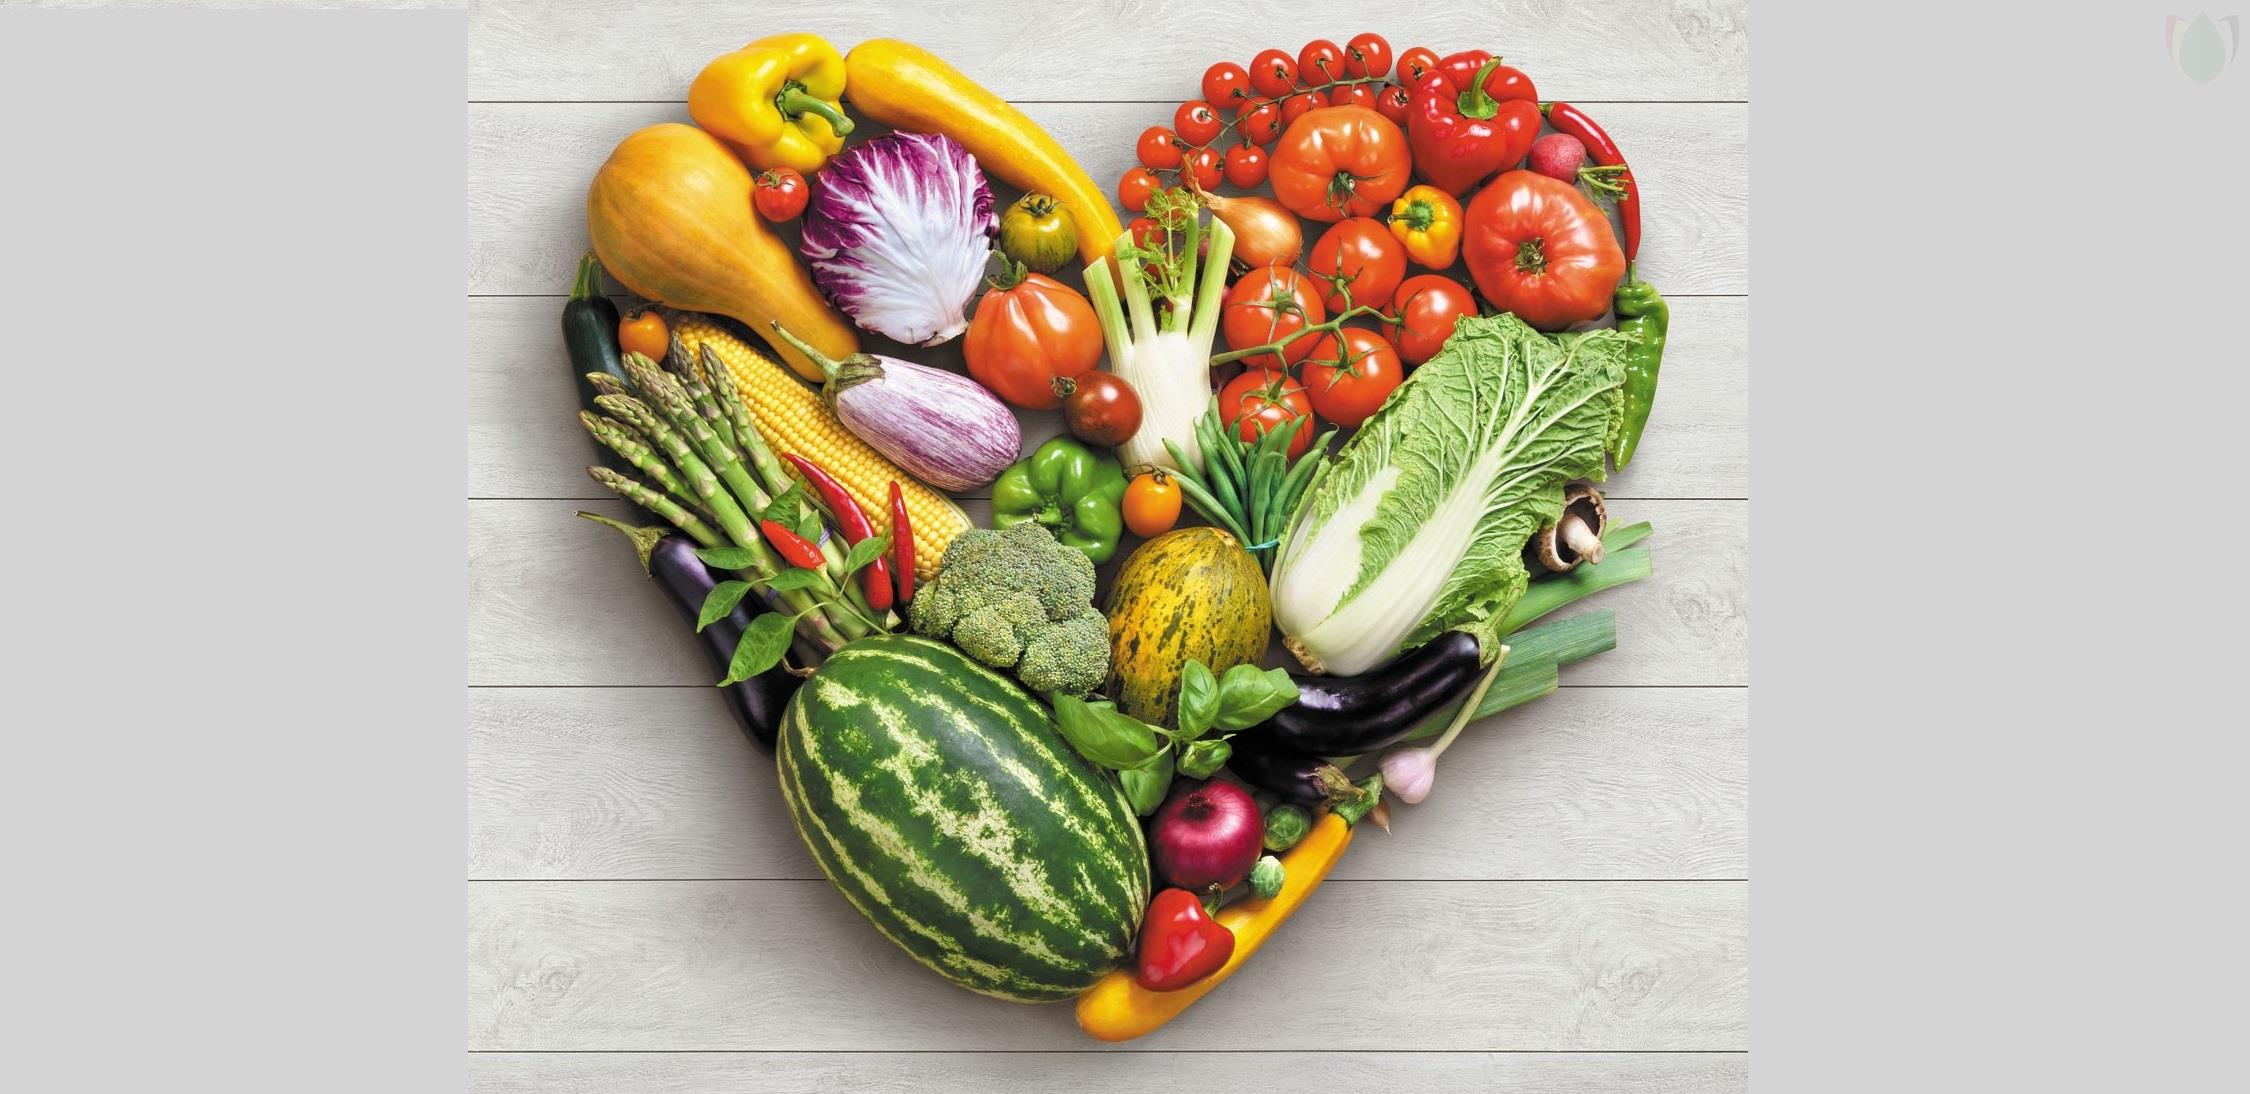 وجودِ شواهدی مبنی بر حفاظت رژیم غذایی گیاهی از سلامت قلب